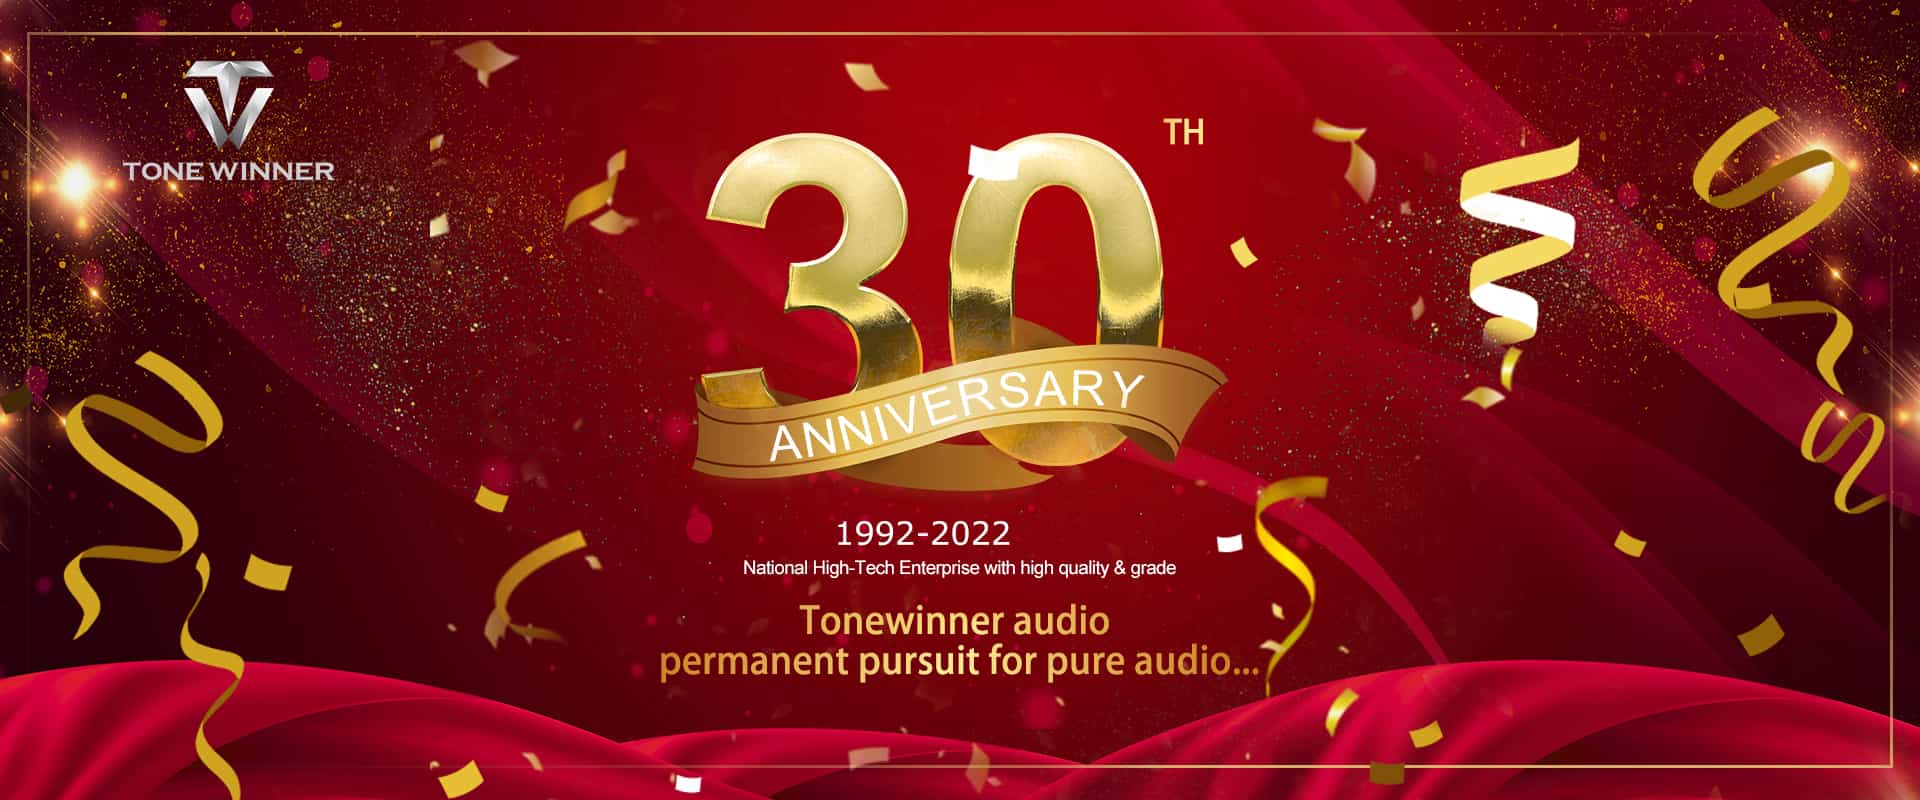 Празднование 30-летия Tonewinner, поздравляем!
